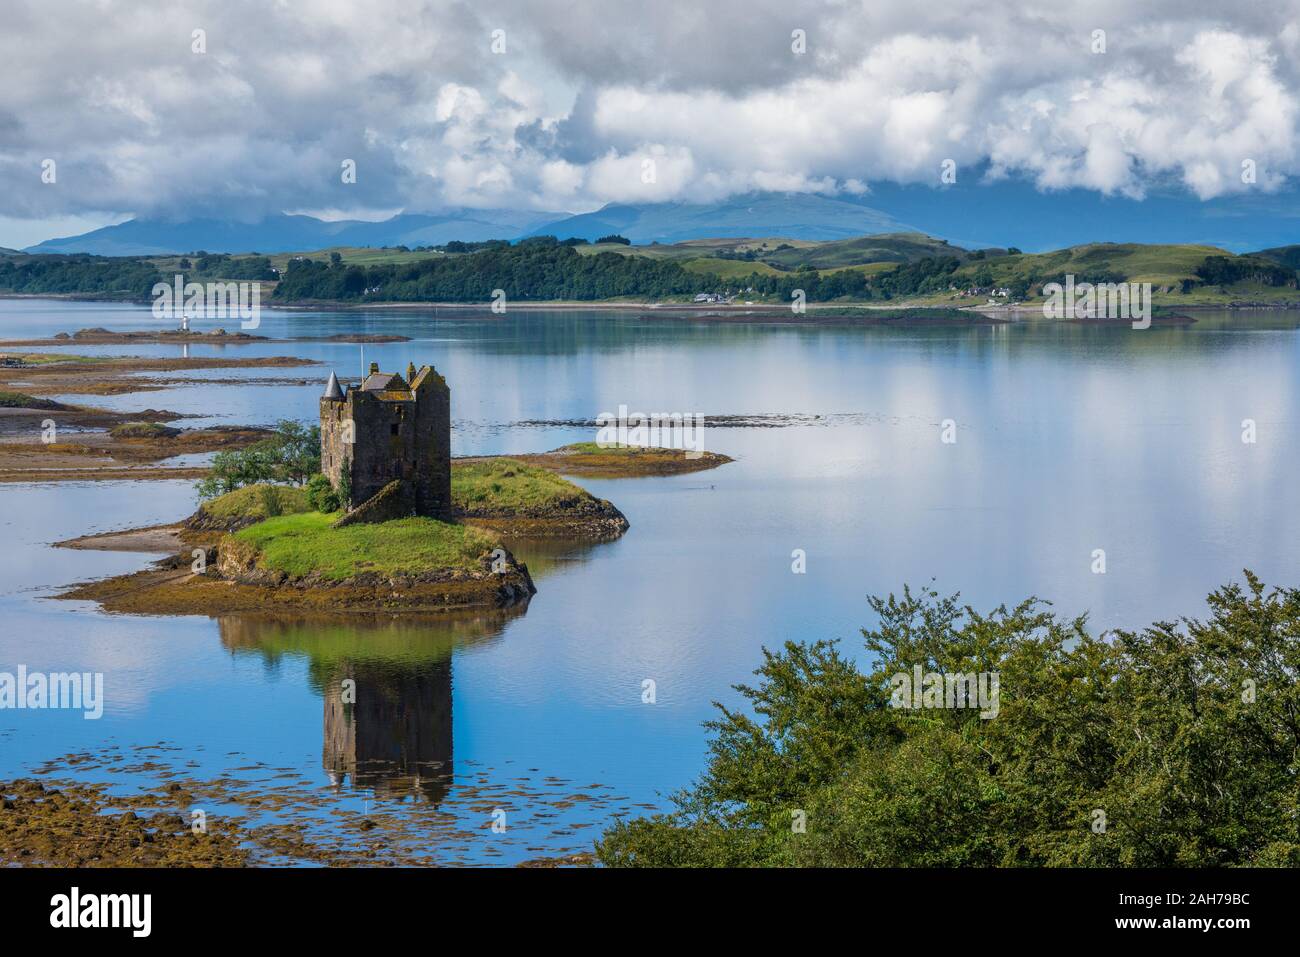 Ein schottischer See mit einer alten Burg auf einem Kleine Insel und Spiegelung auf Wasser Stockfoto